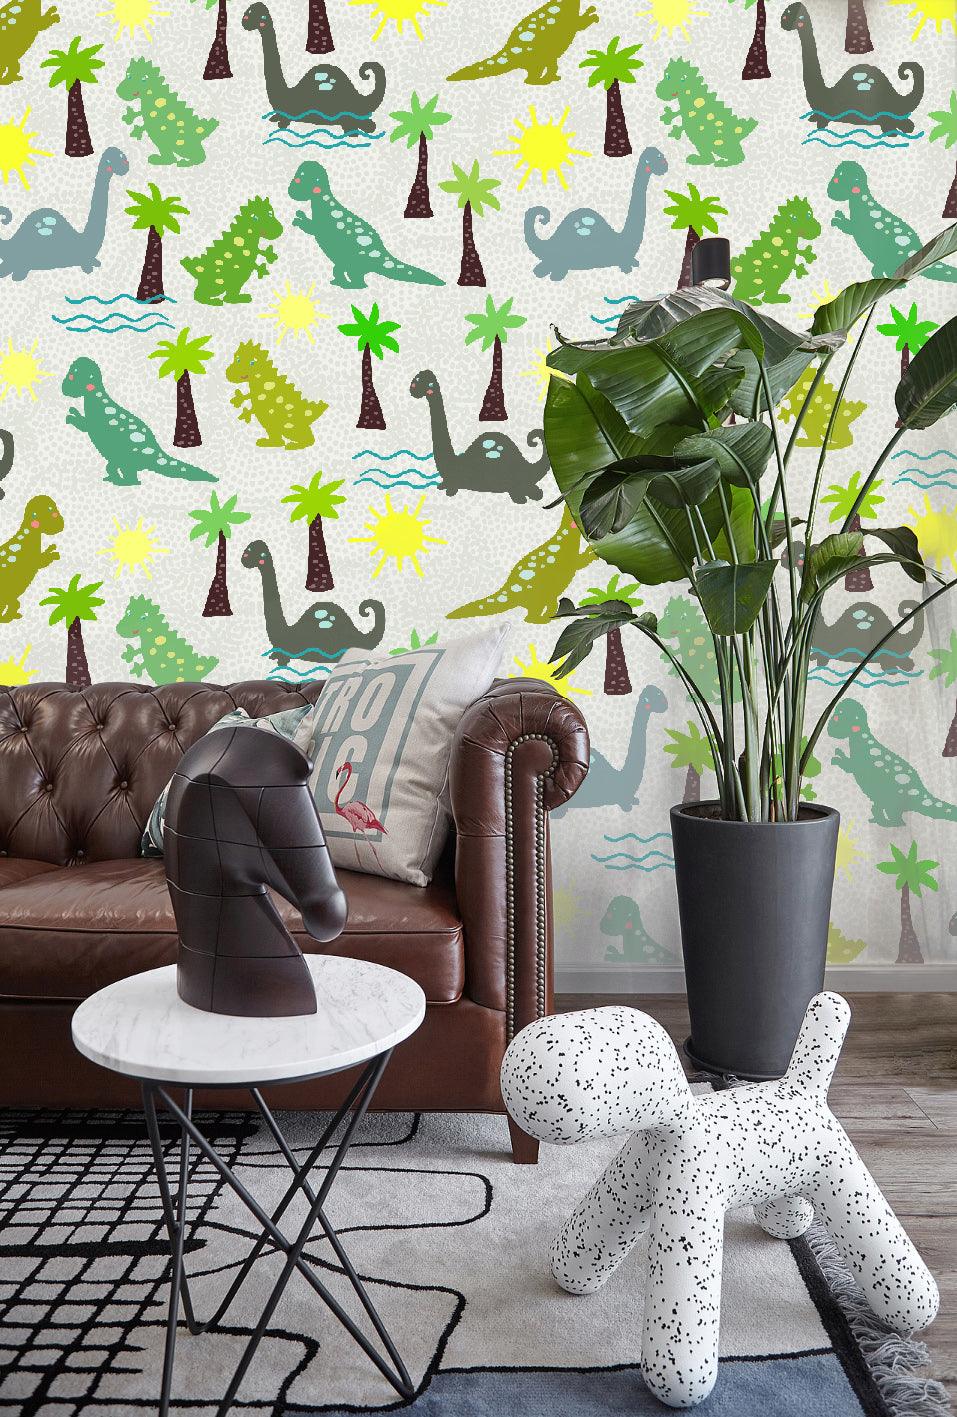 3D Cartoon Dinosaur Palm Trees Wall Mural Wallpaper 23- Jess Art Decoration